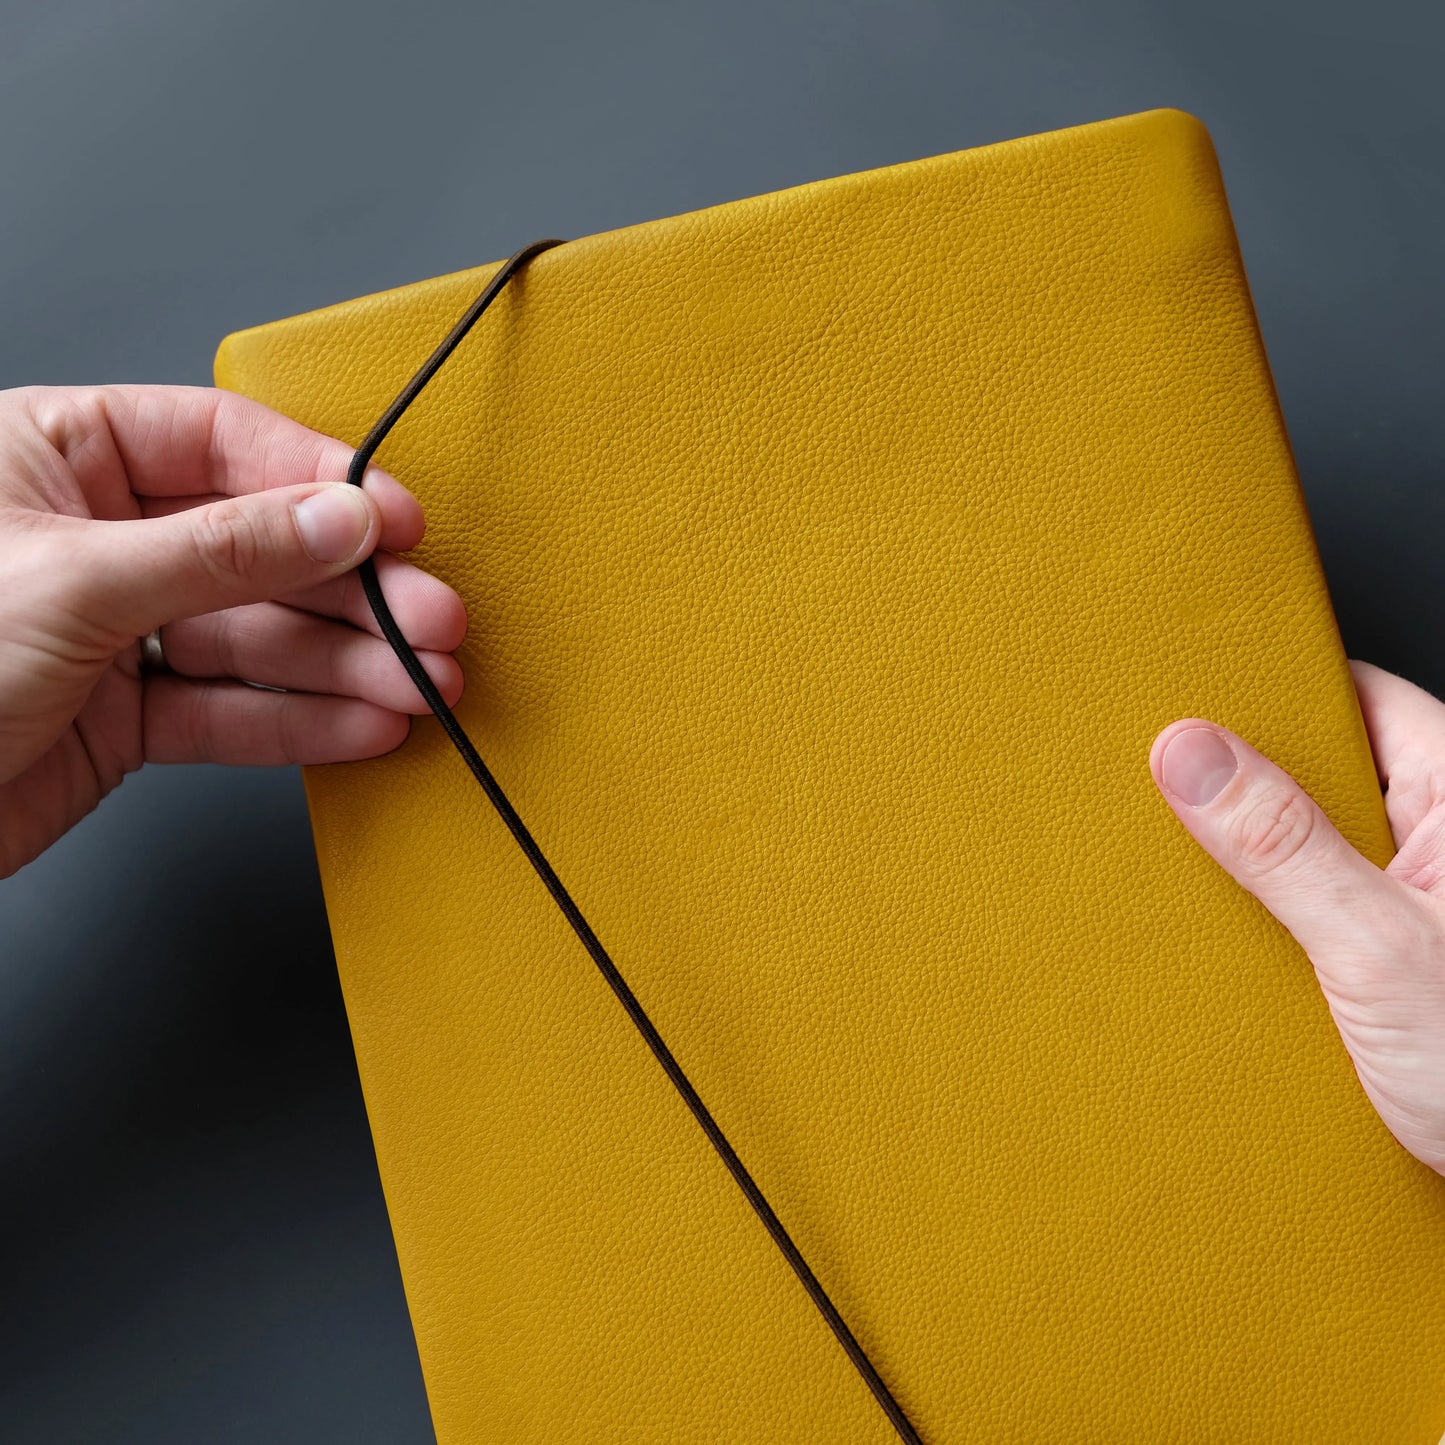 Hülle aus Leder für Tablets in gelb mit schwarzem Gummi das von einer Hand geschlossen wird.